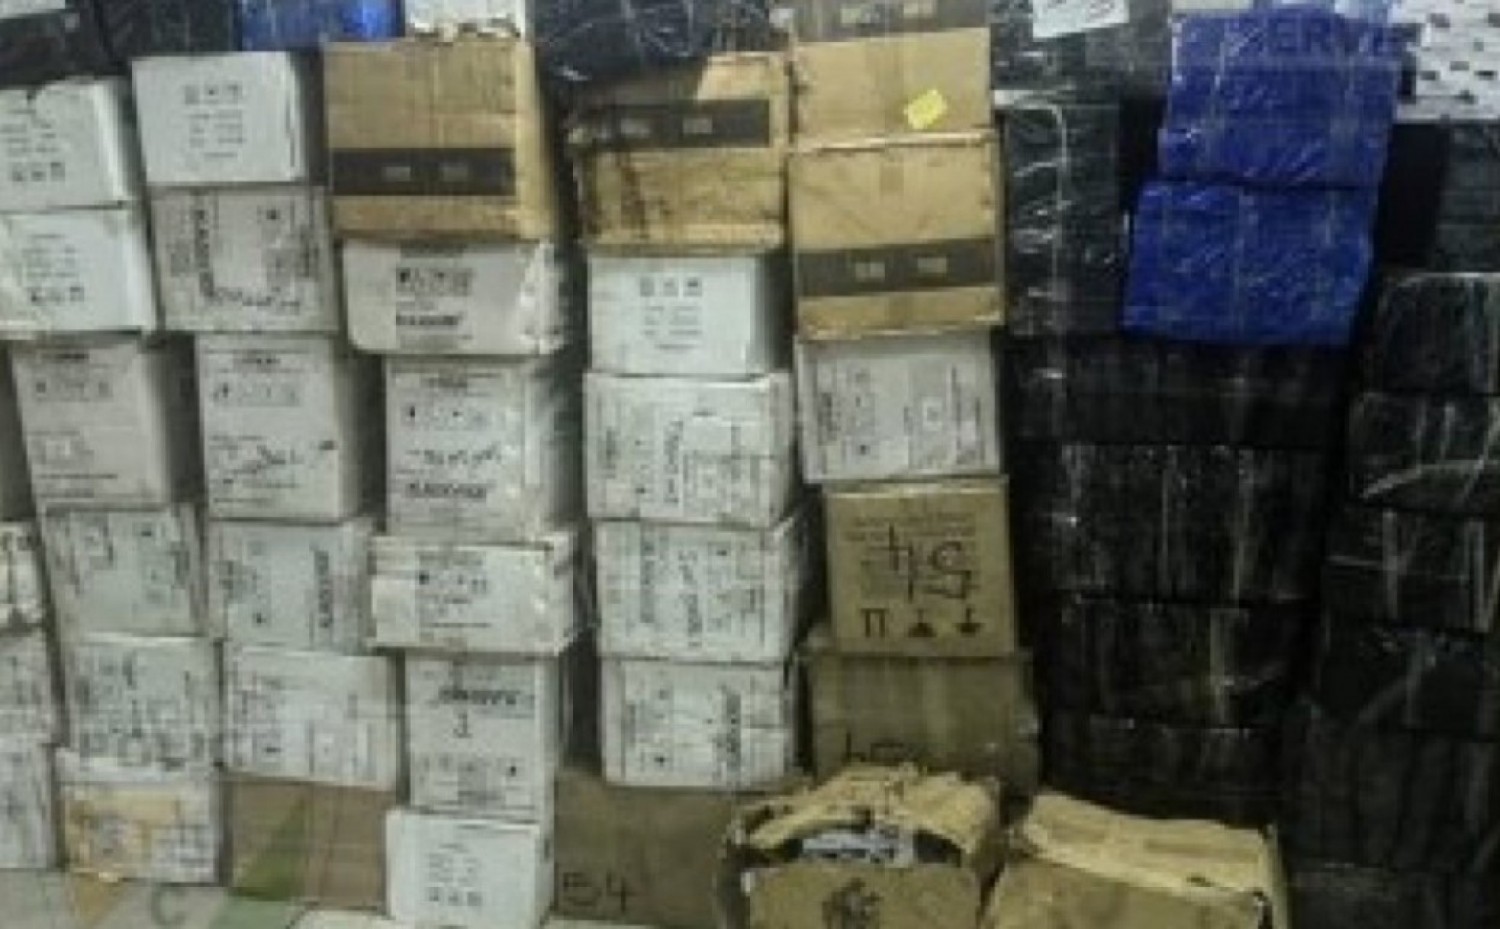 Côte d'Ivoire : Plus d'une centaine de cartons de médicaments falsifiés saisis, un suspect interpellé